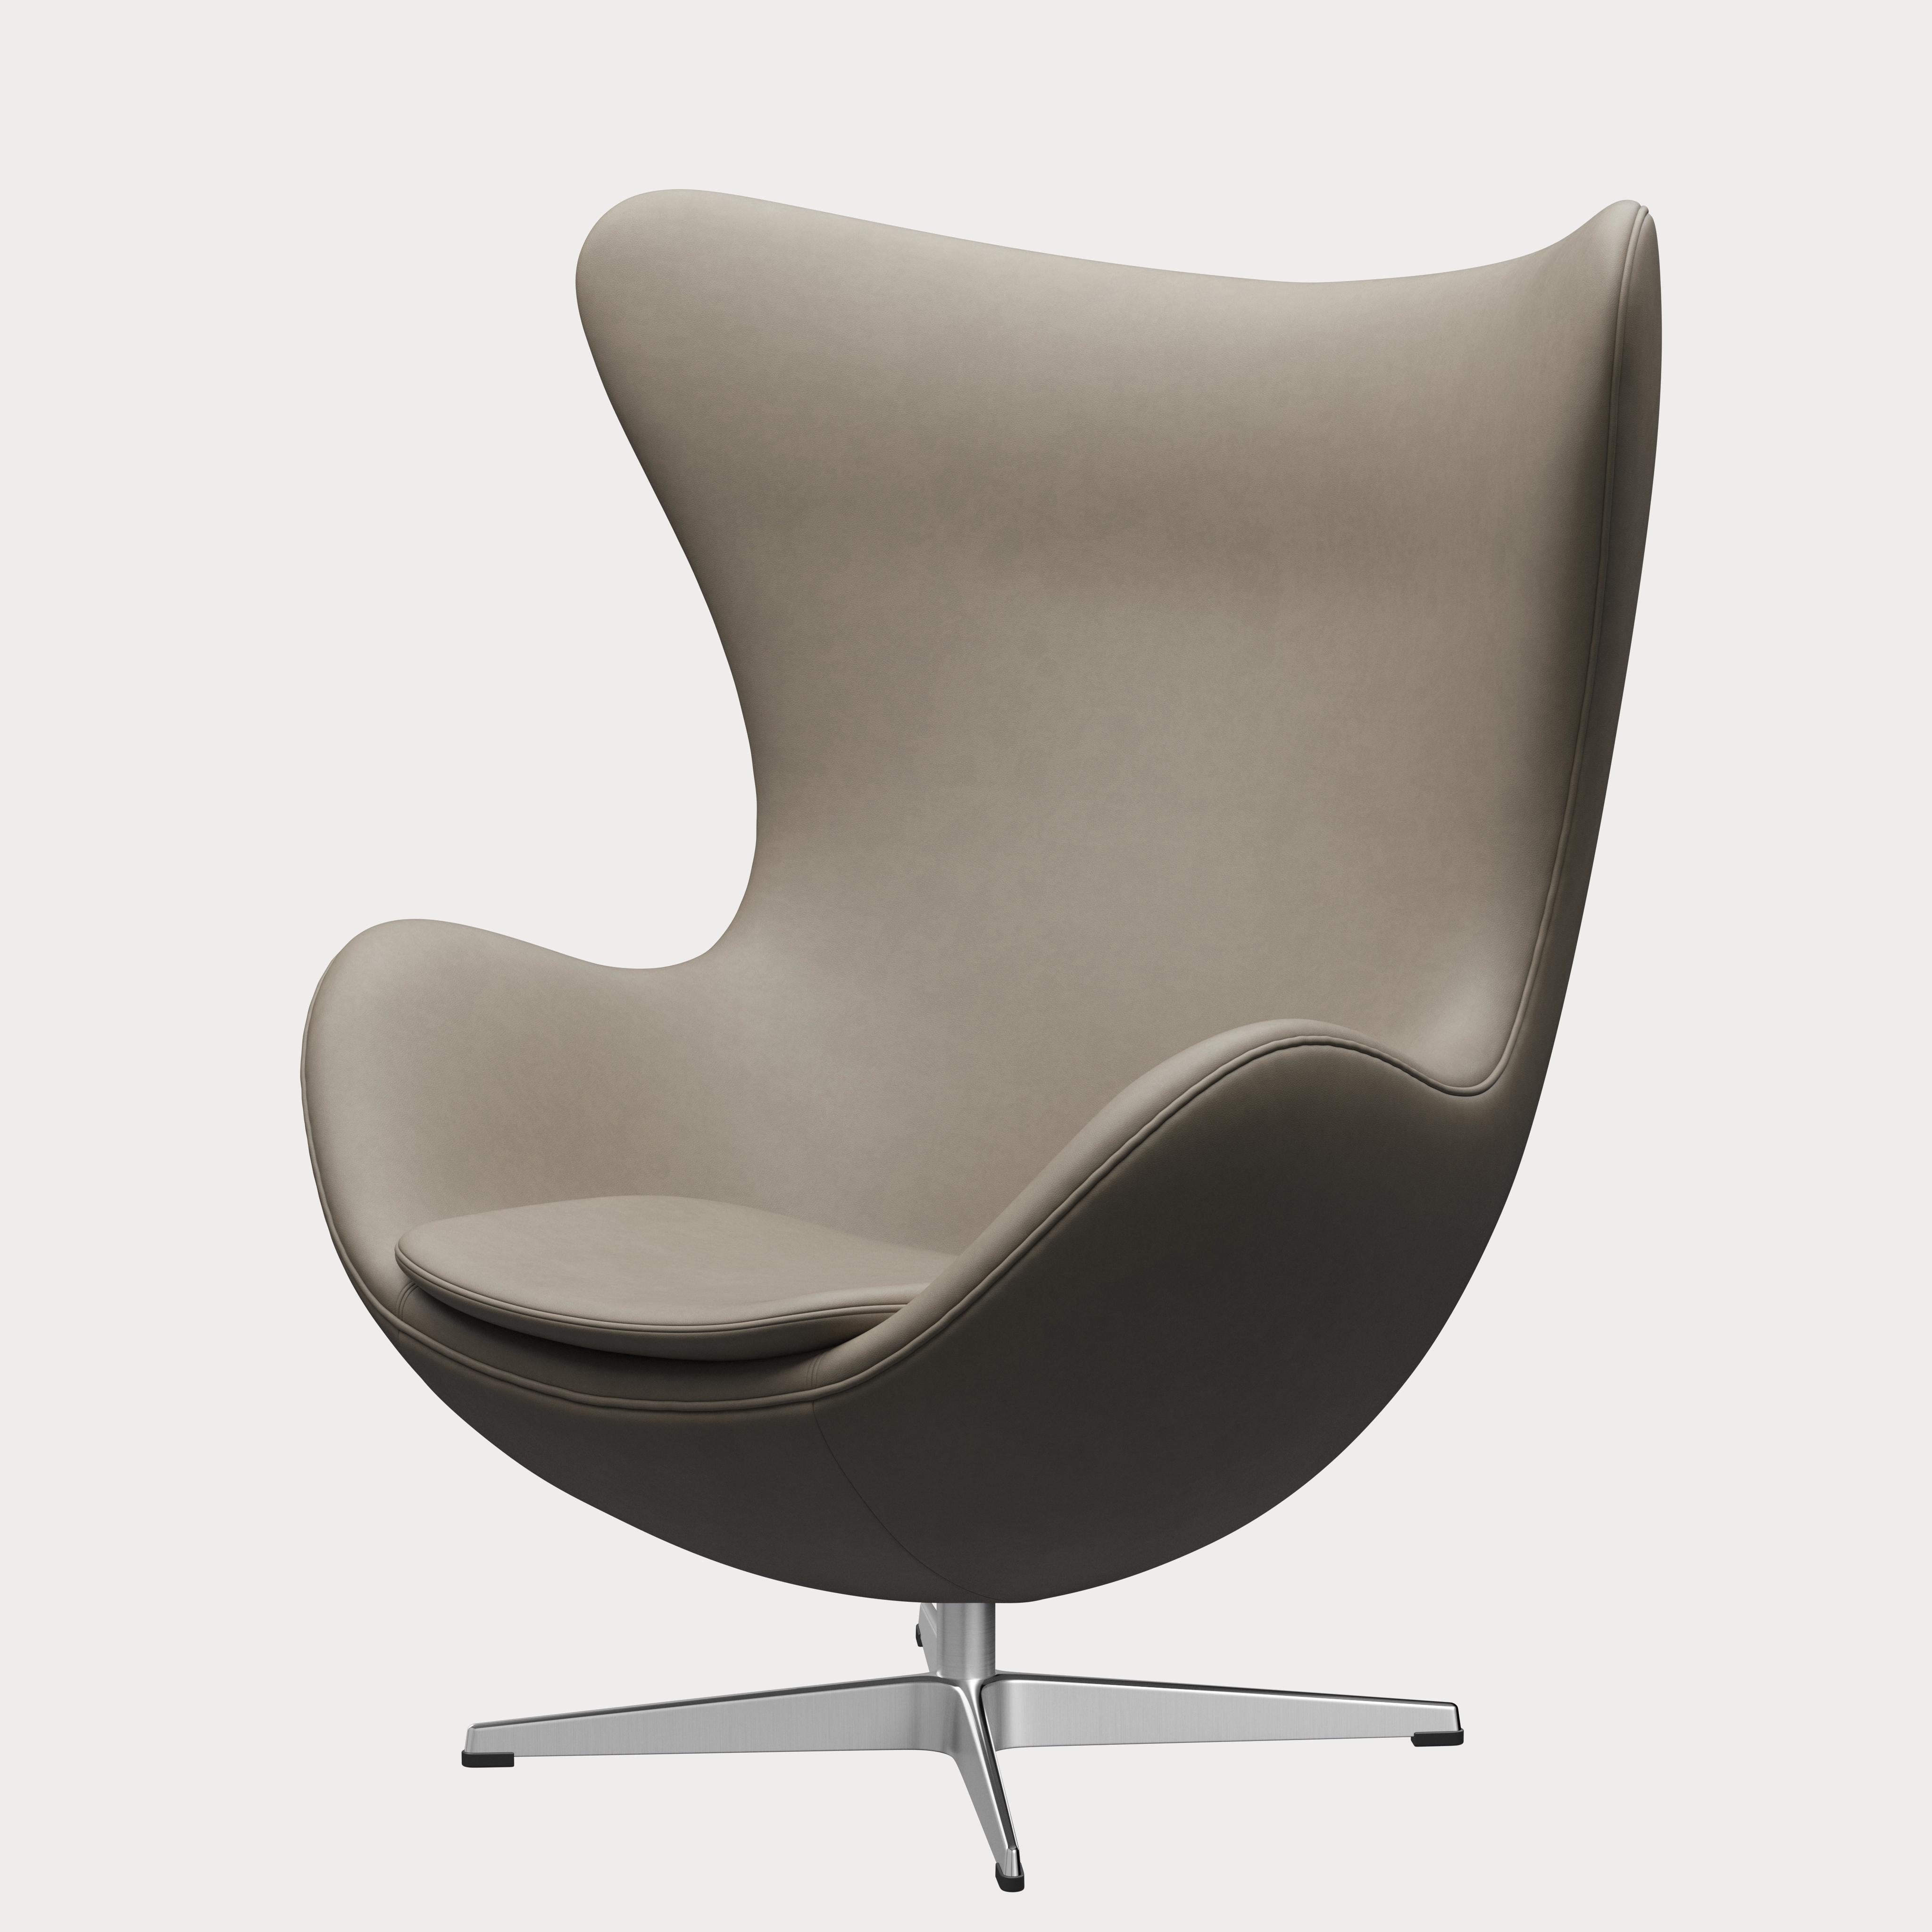 Arne Jacobsen 'Egg' Chair for Fritz Hansen in Leather Upholstery (Cat. 3) For Sale 2